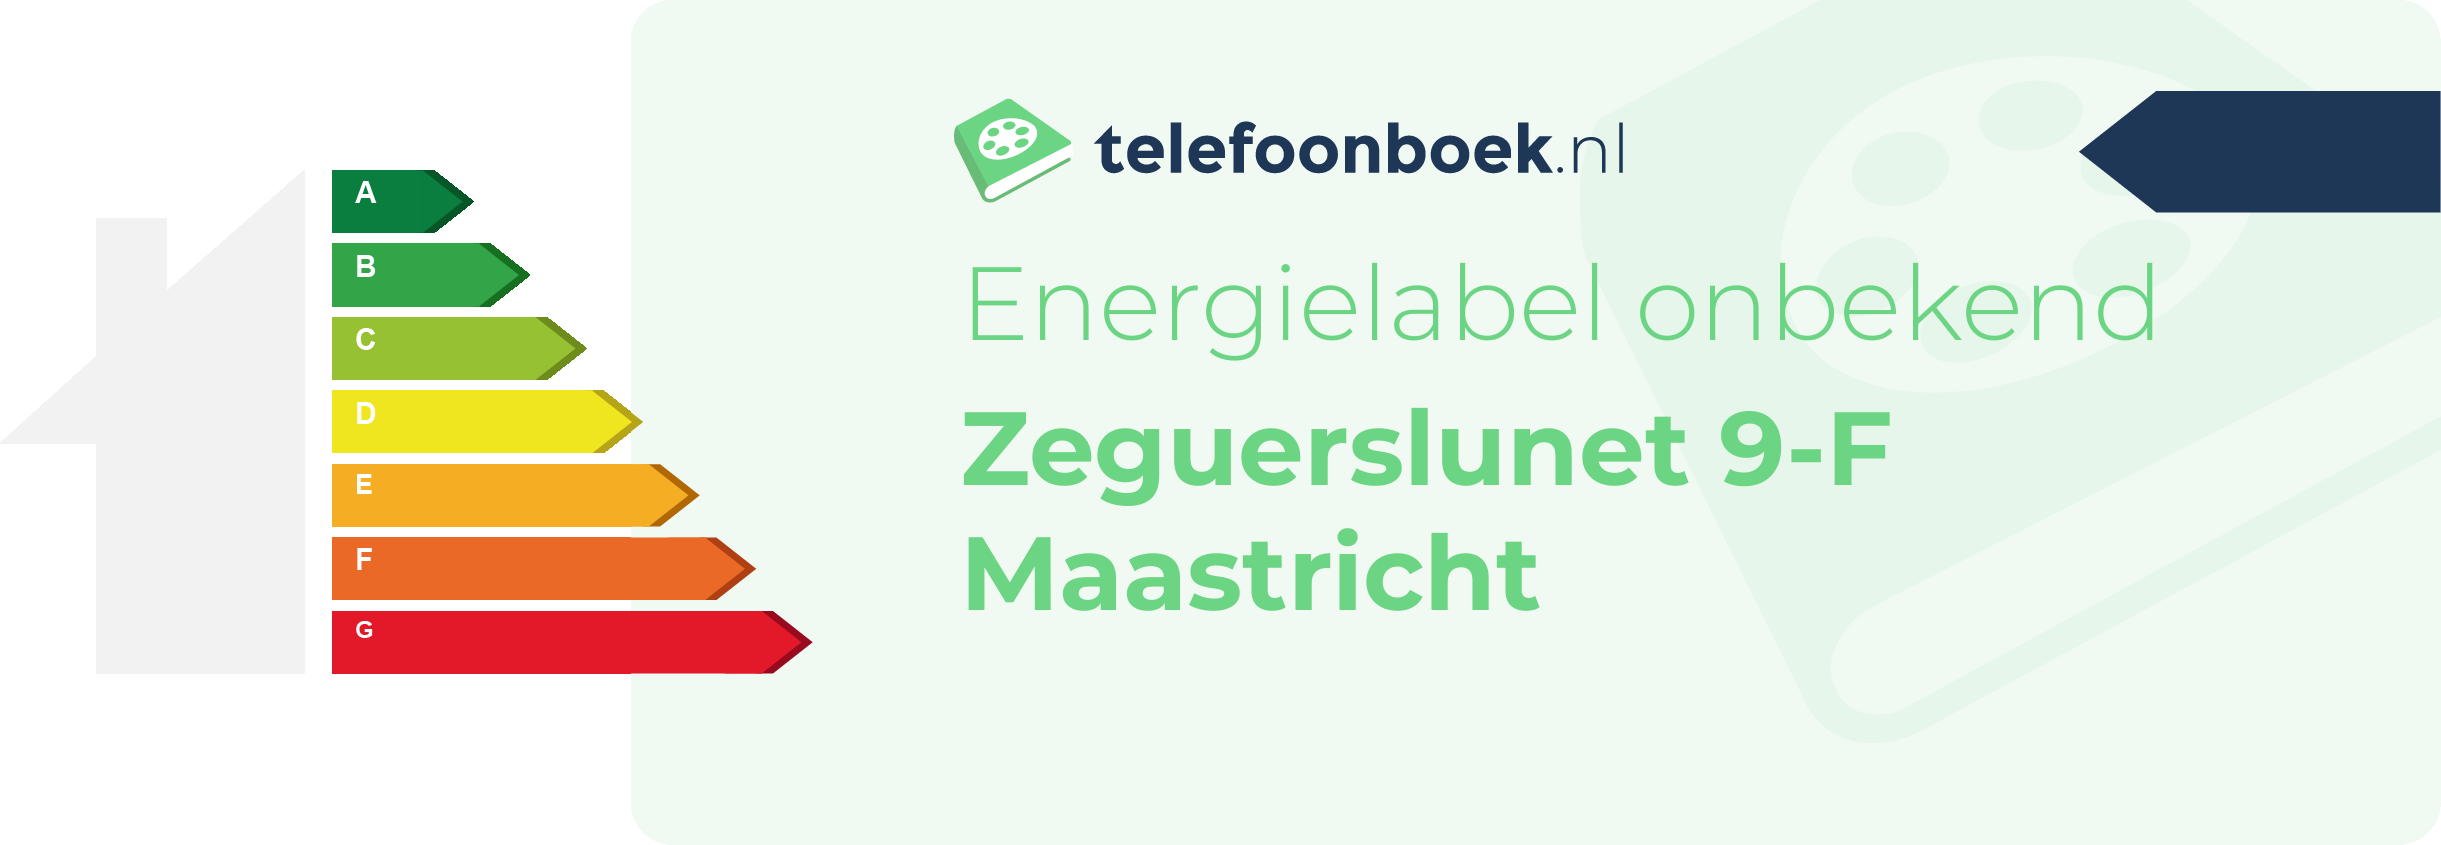 Energielabel Zeguerslunet 9-F Maastricht